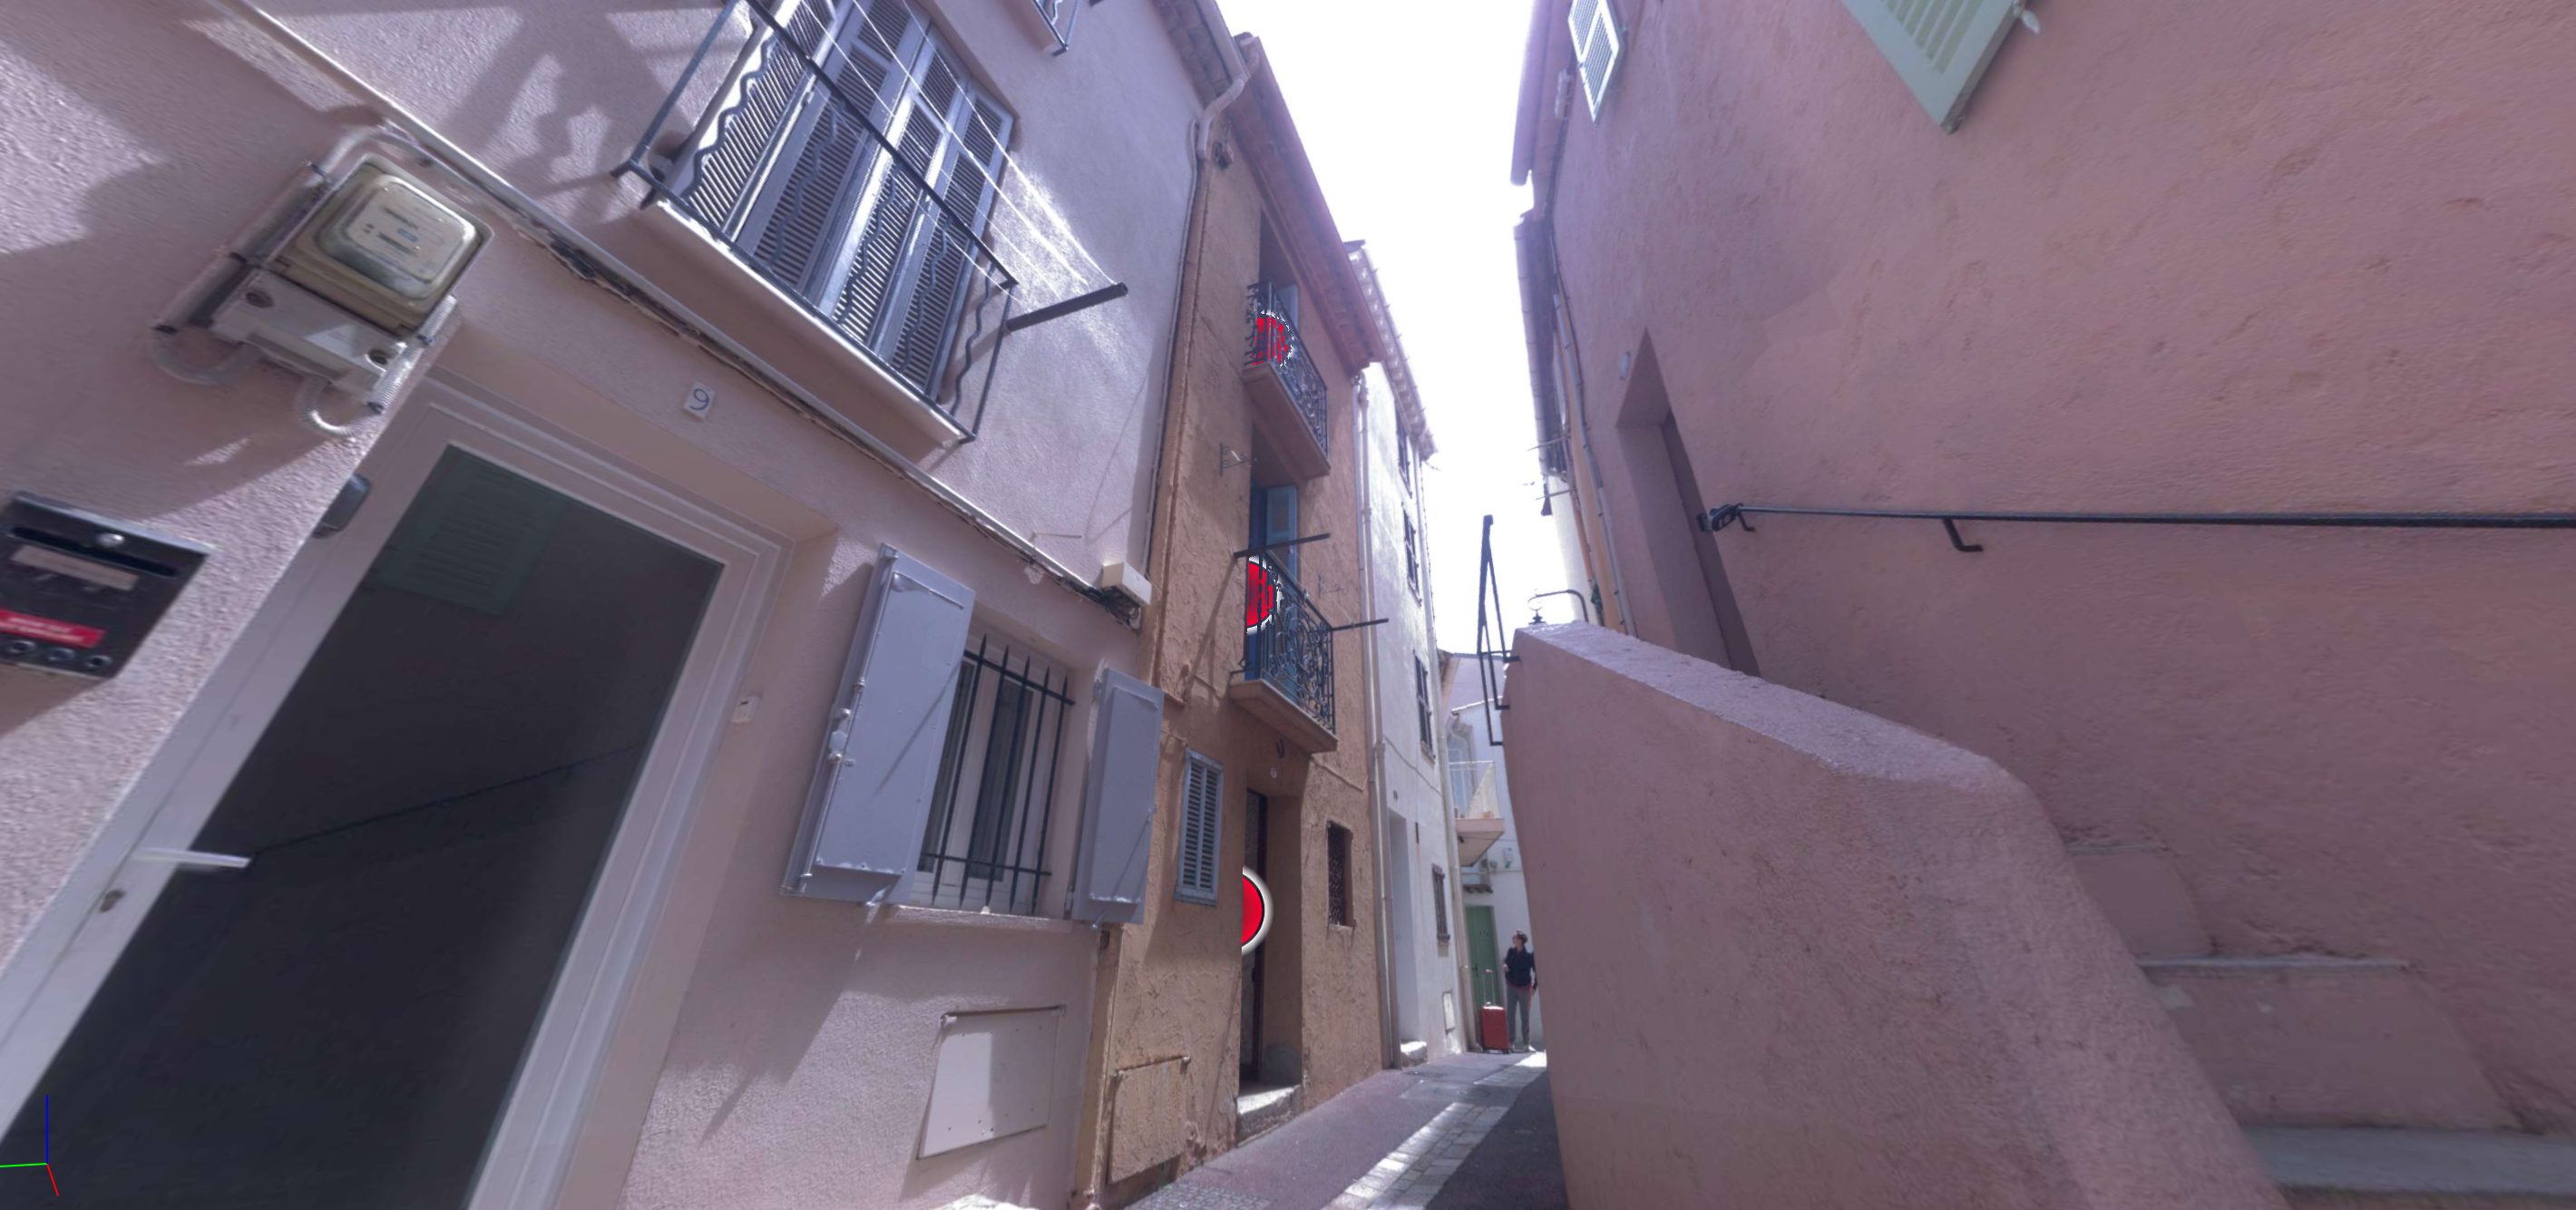 Découvrez l'histoire cachée d'une maison du Suquet à Cannes grâce à notre relevé 3D avec Leica BLK 360. Une révélation en 3D signée SANAGI Nous avons enregistré une image de la photo de l'entrée.